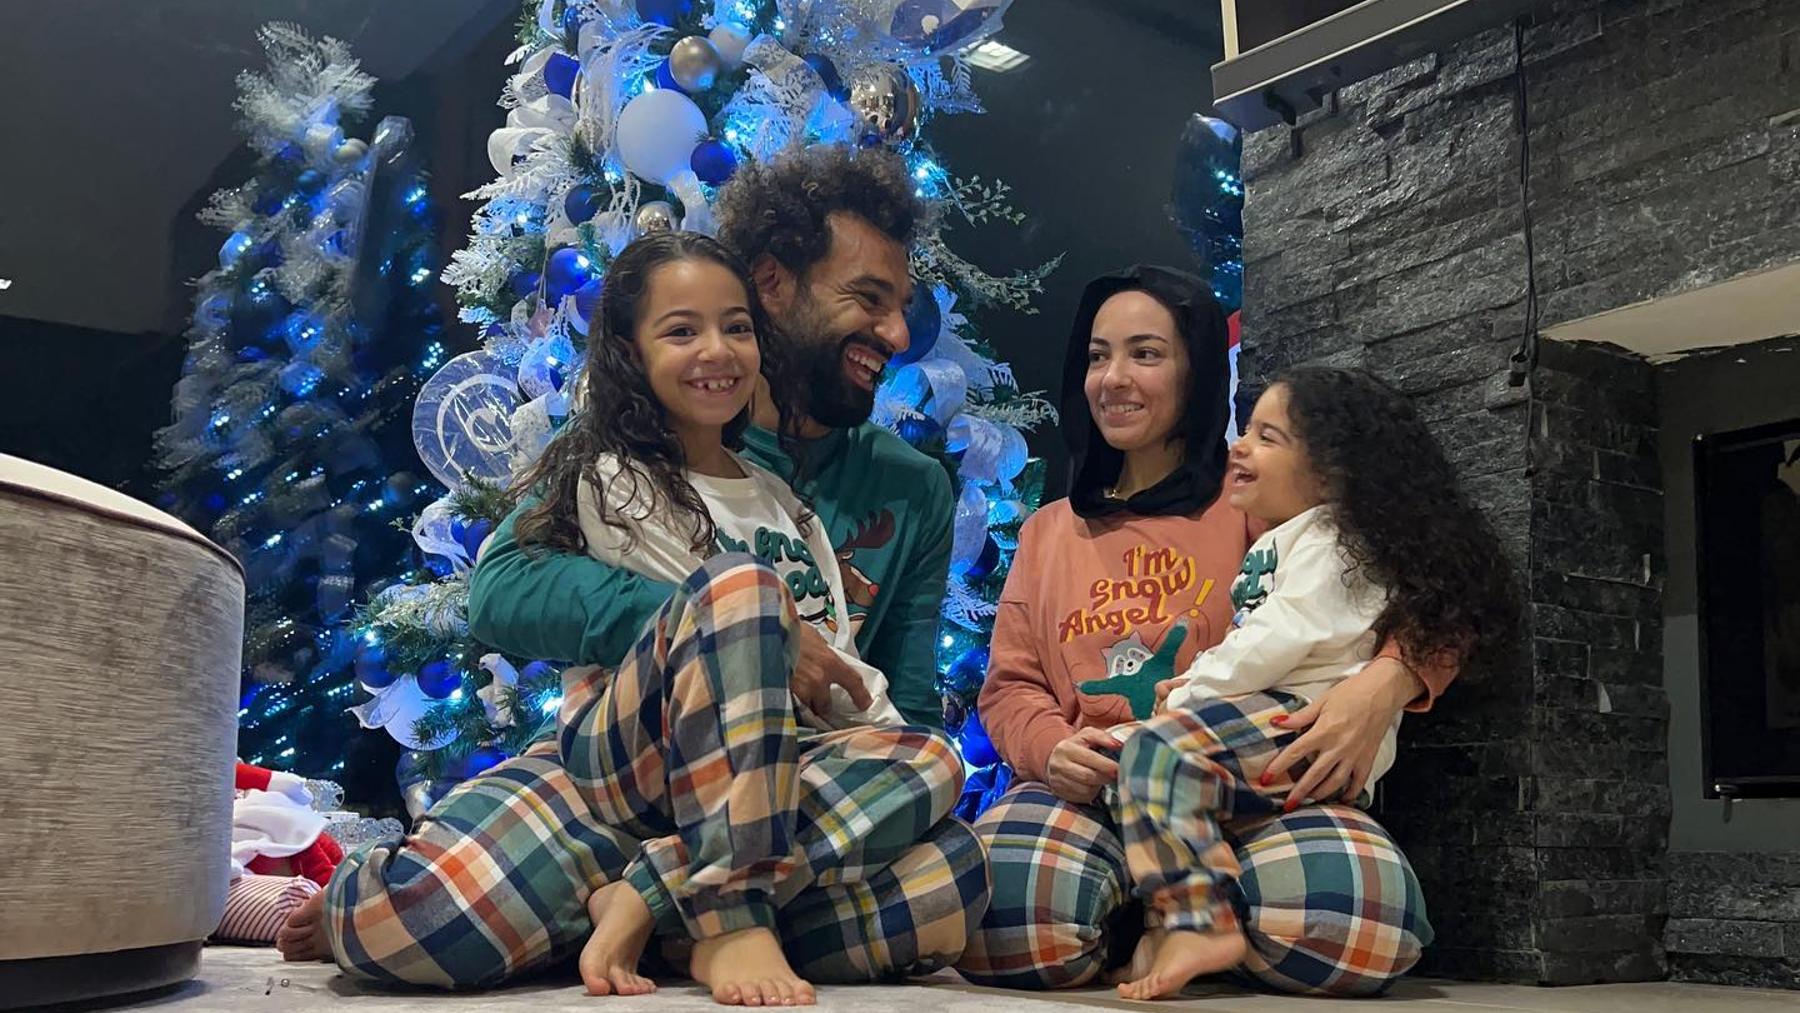 Salah posa junto a su familia delante de un árbol de Navidad.